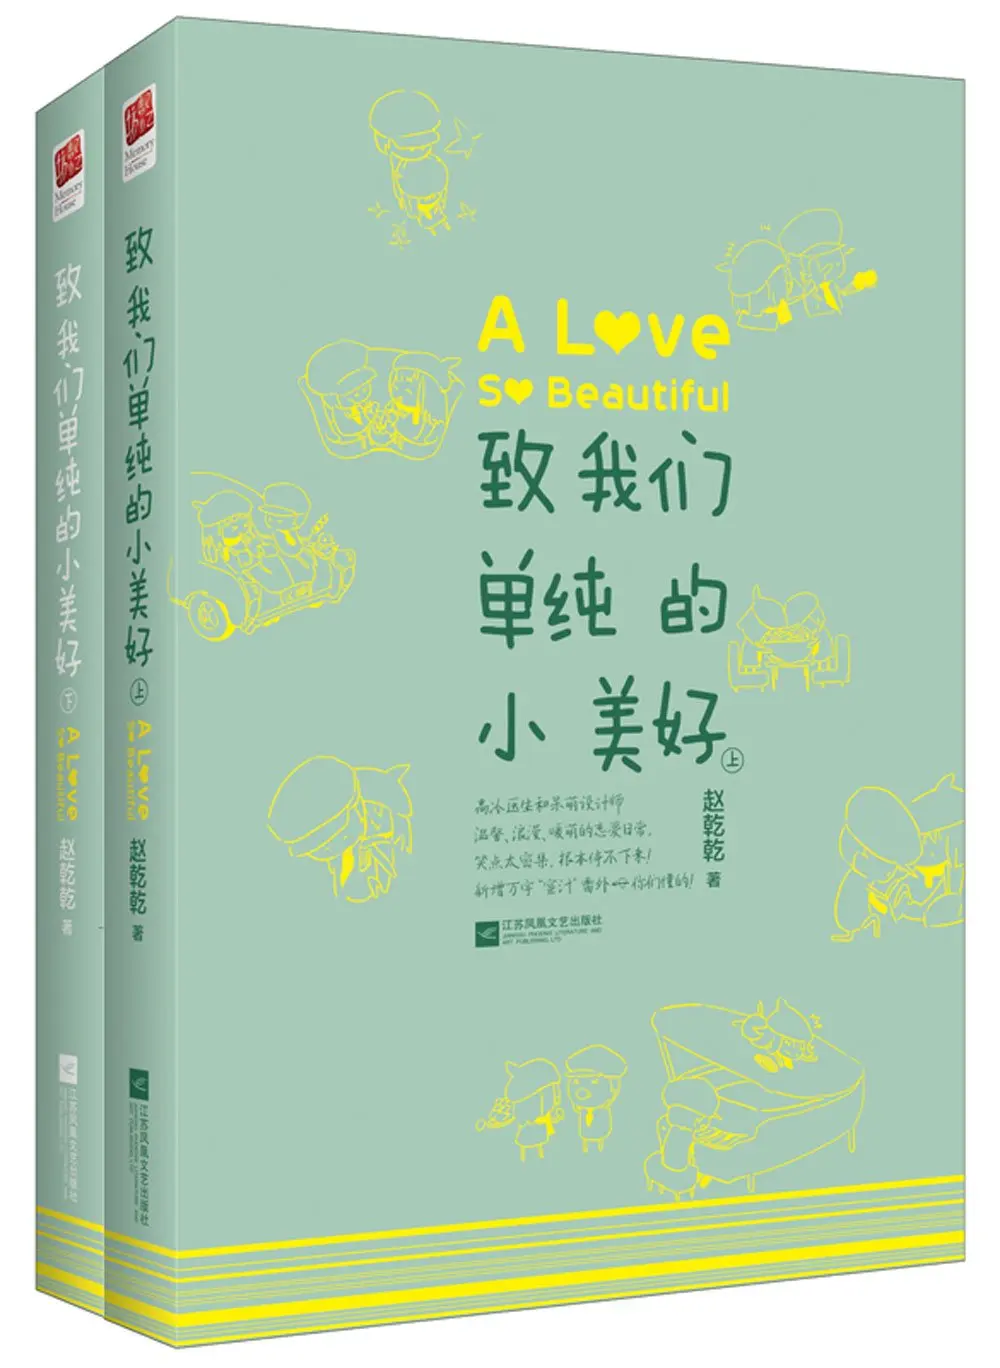 Очень красивые теплые любовные романы забавная Молодежная литература от Zhaoqianqian